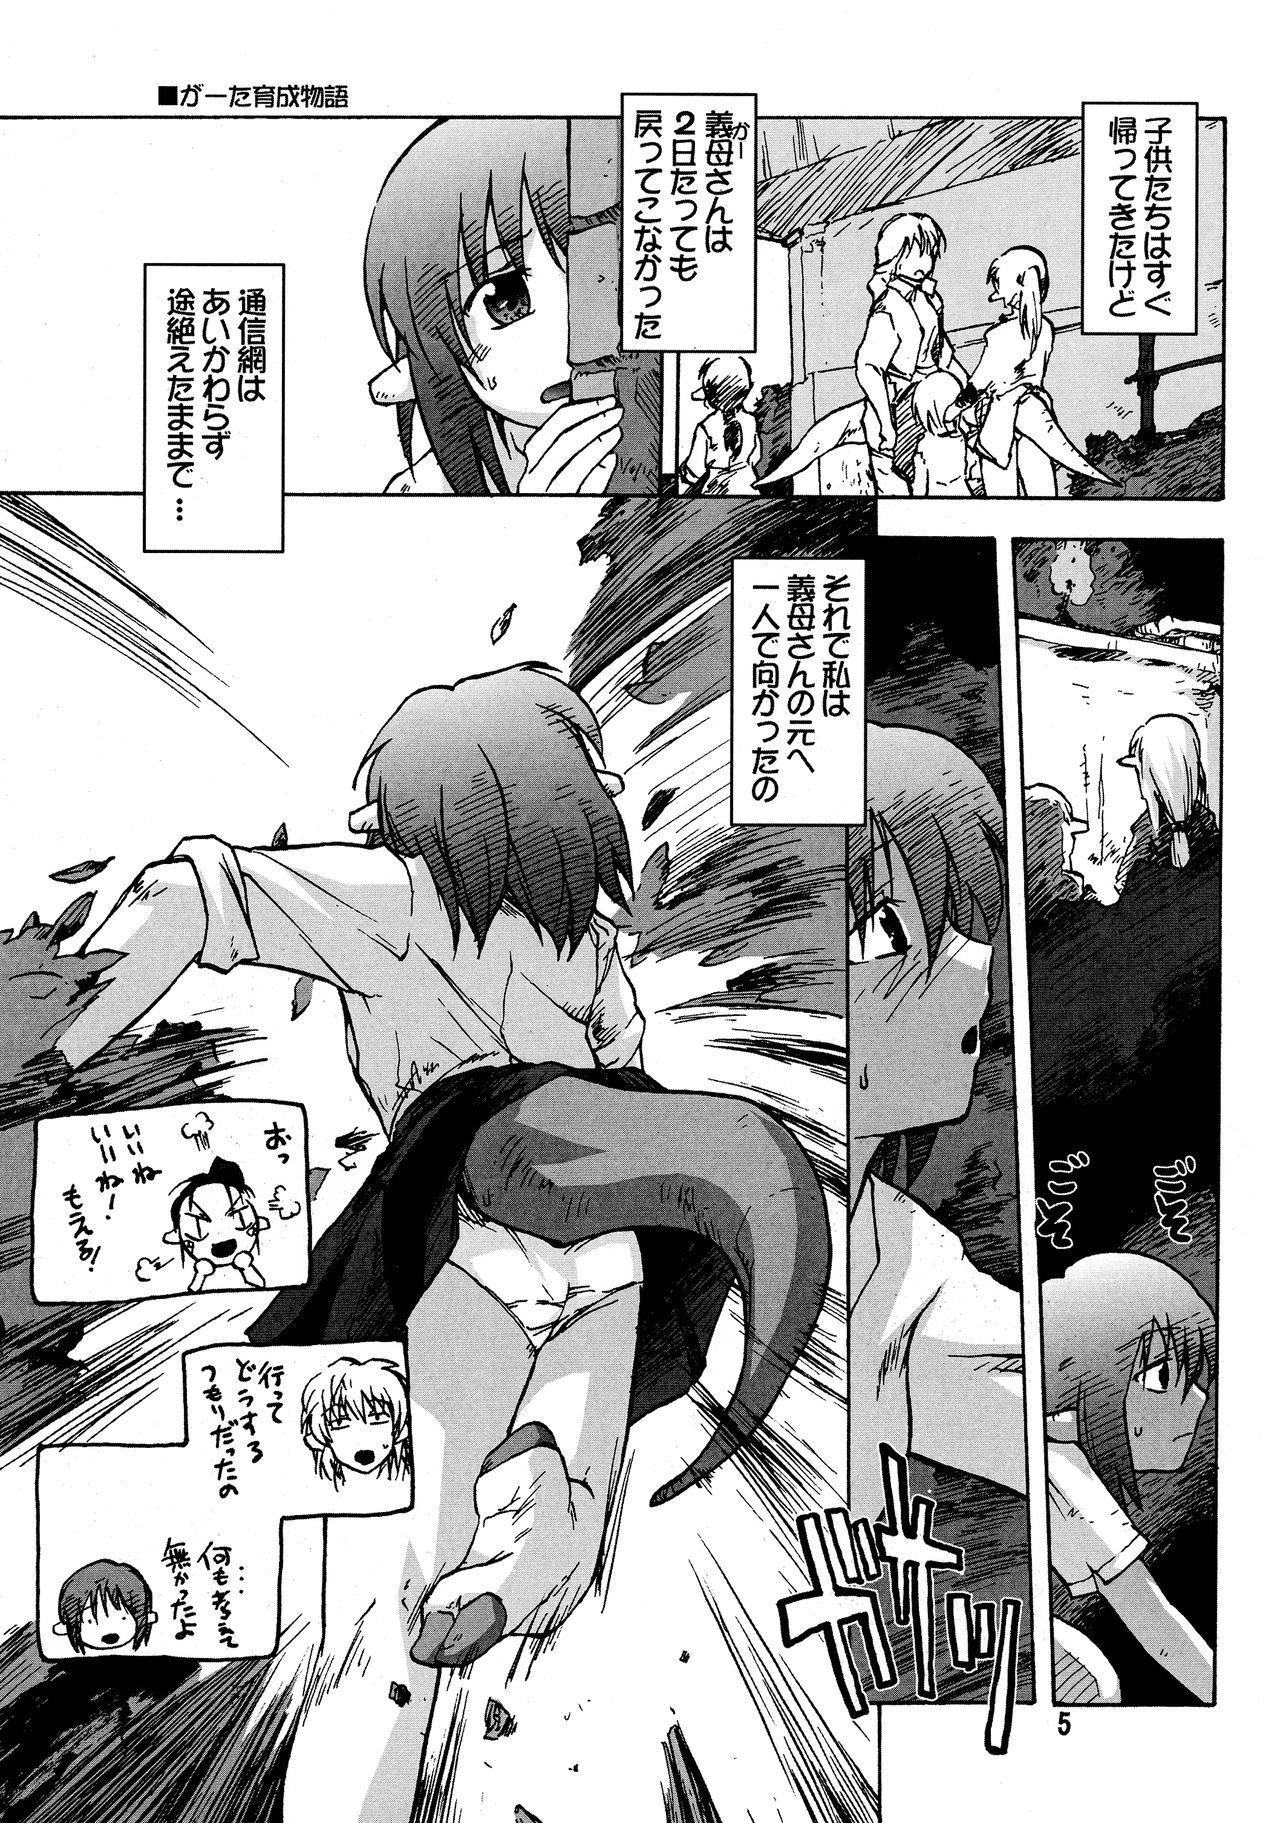 Butt Manga Mintochikuwa vol. 3 Love - Page 5